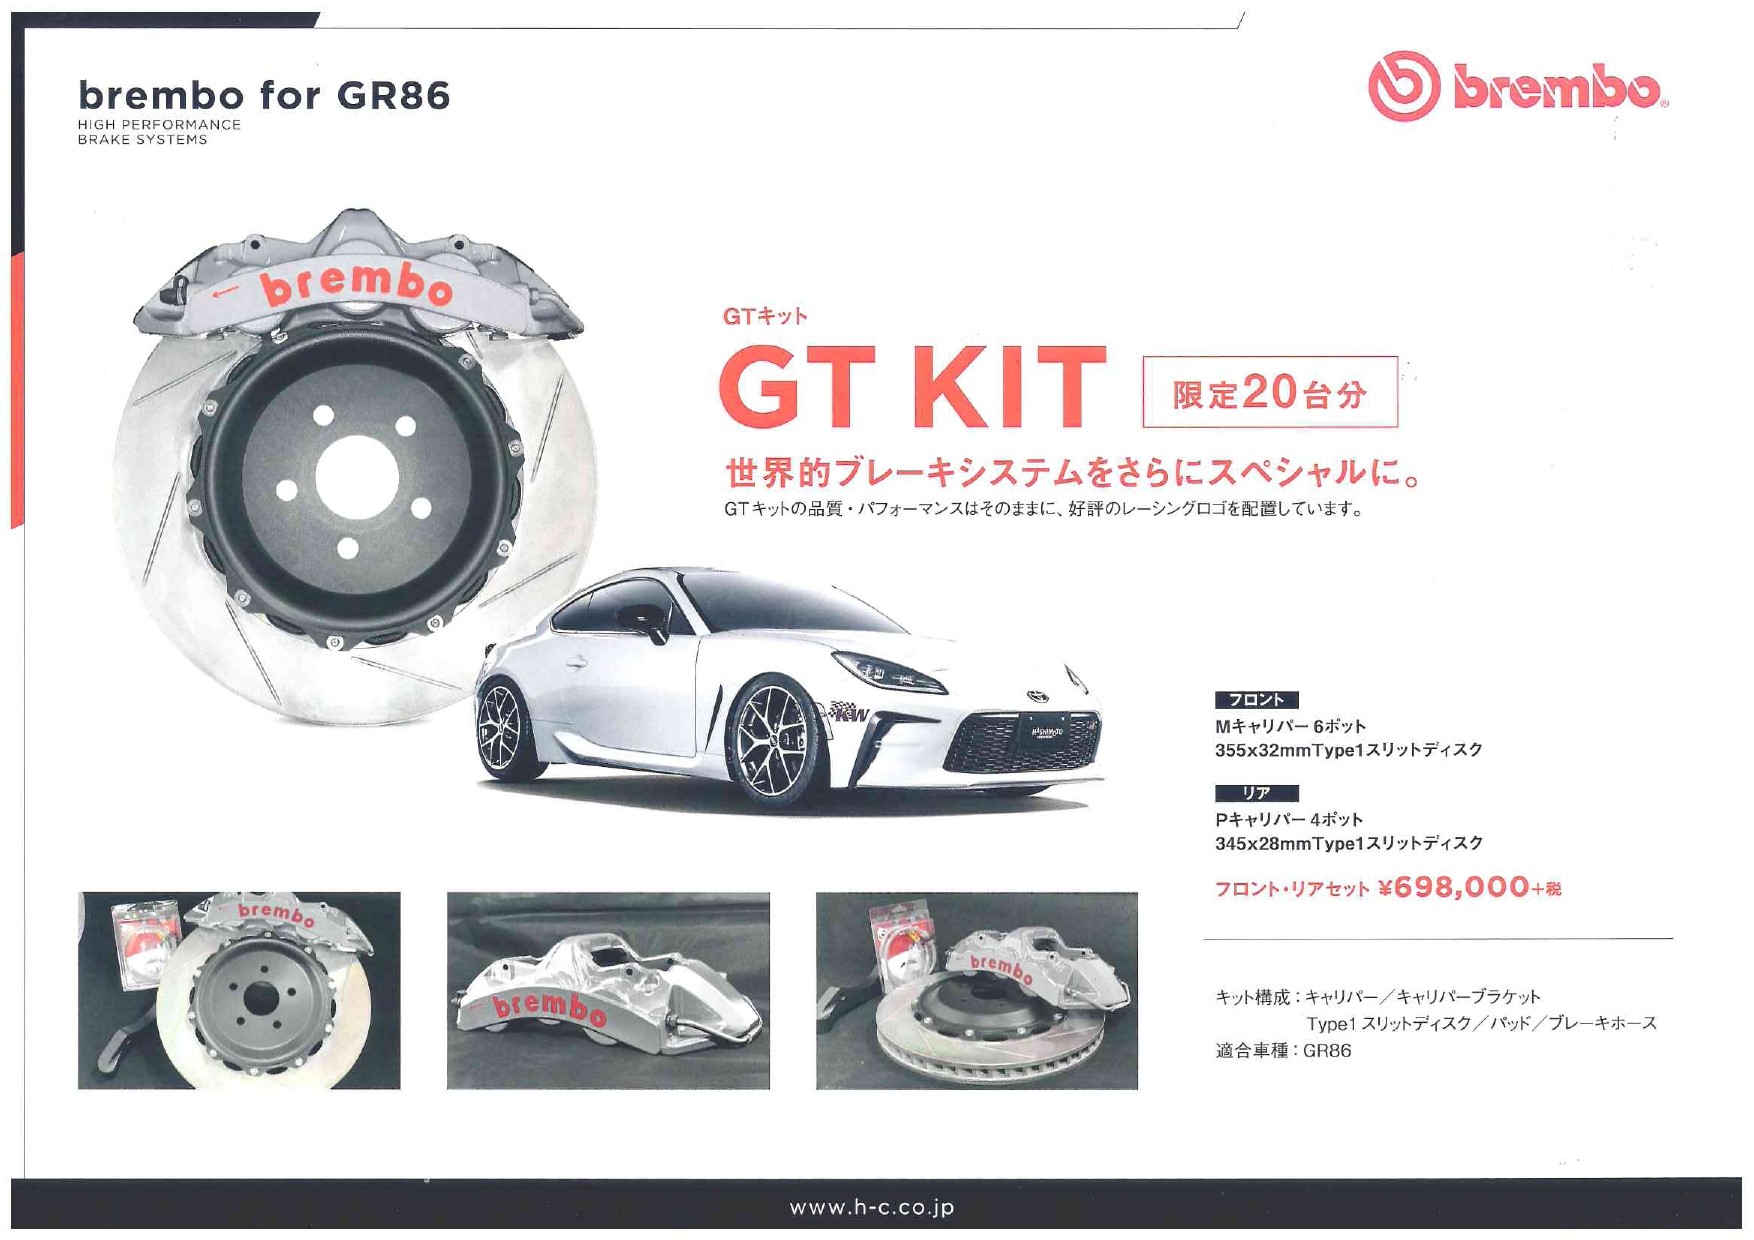 滋賀県】TOYOTA(トヨタ) GR86用 Brembo(ブレンボ) GT-KIT キャリパー